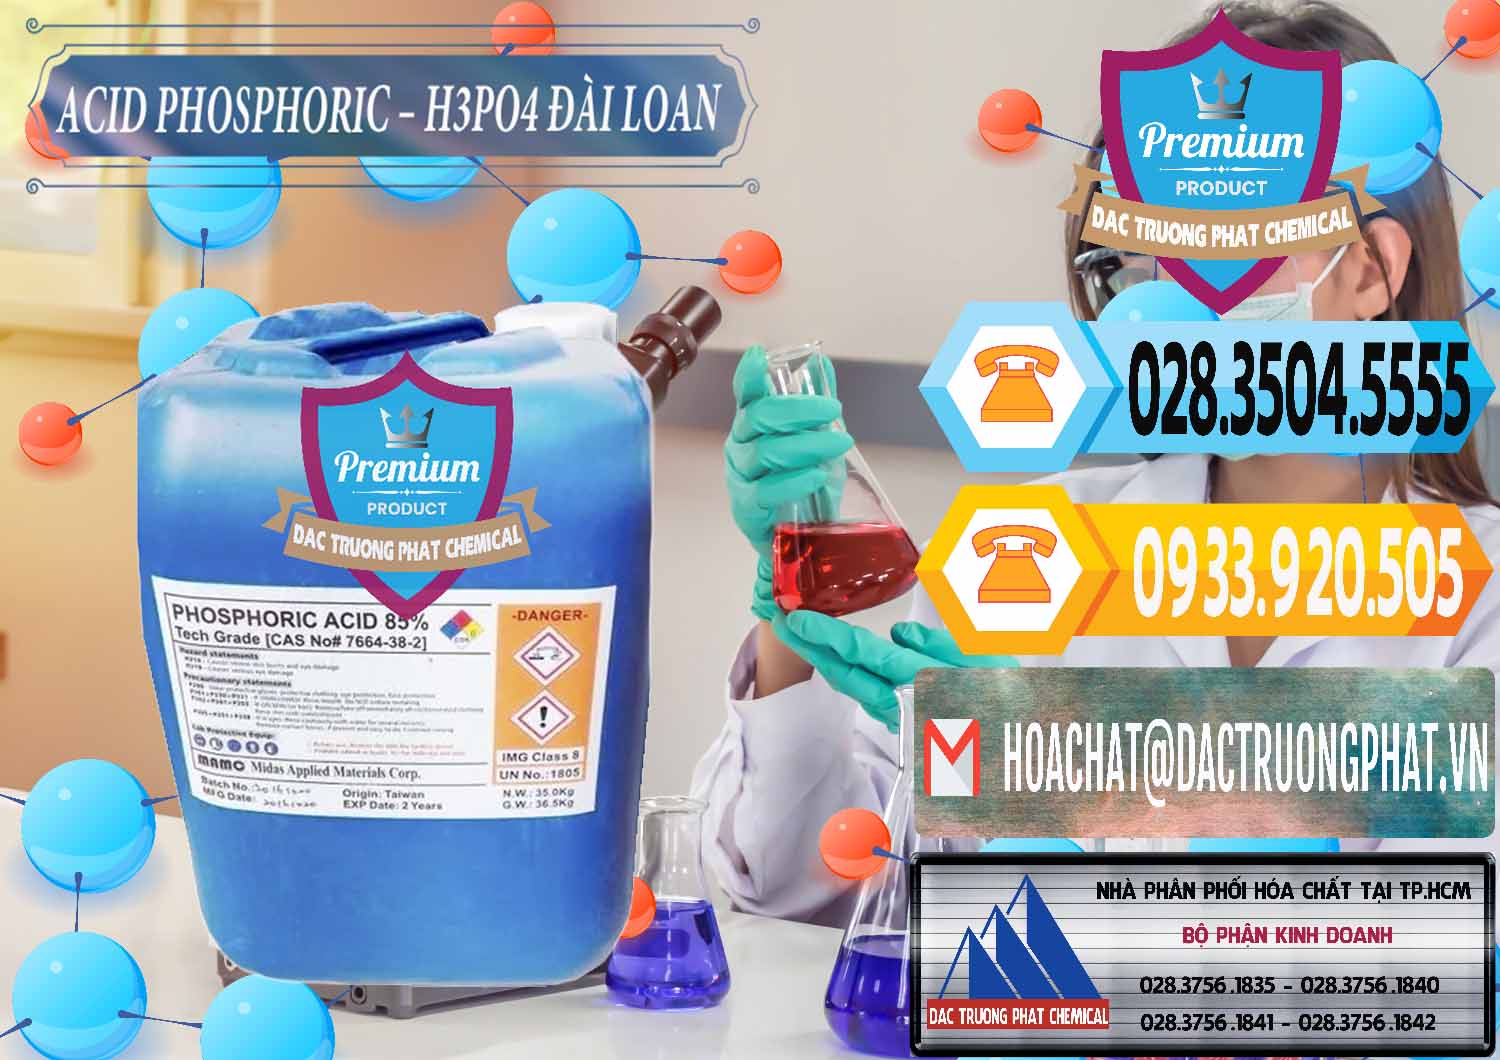 Công ty nhập khẩu và bán Axit Phosphoric - Acid Phosphoric H3PO4 85% Đài Loan Taiwan - 0351 - Nơi chuyên kinh doanh và phân phối hóa chất tại TP.HCM - hoachattayrua.net